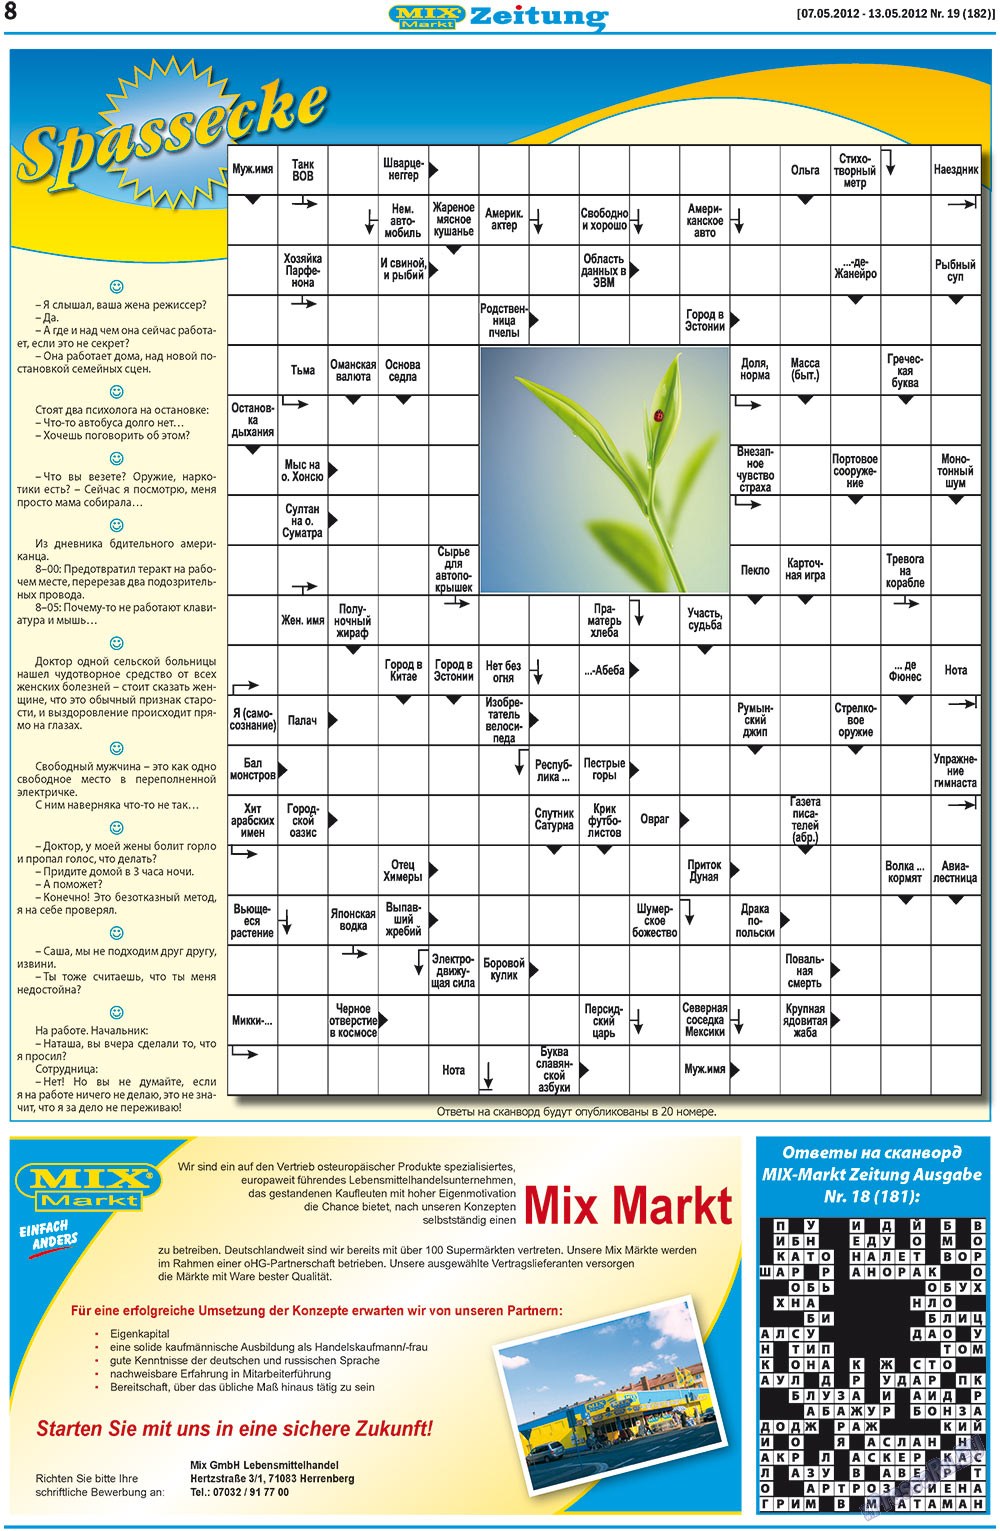 MIX-Markt Zeitung, газета. 2012 №19 стр.8